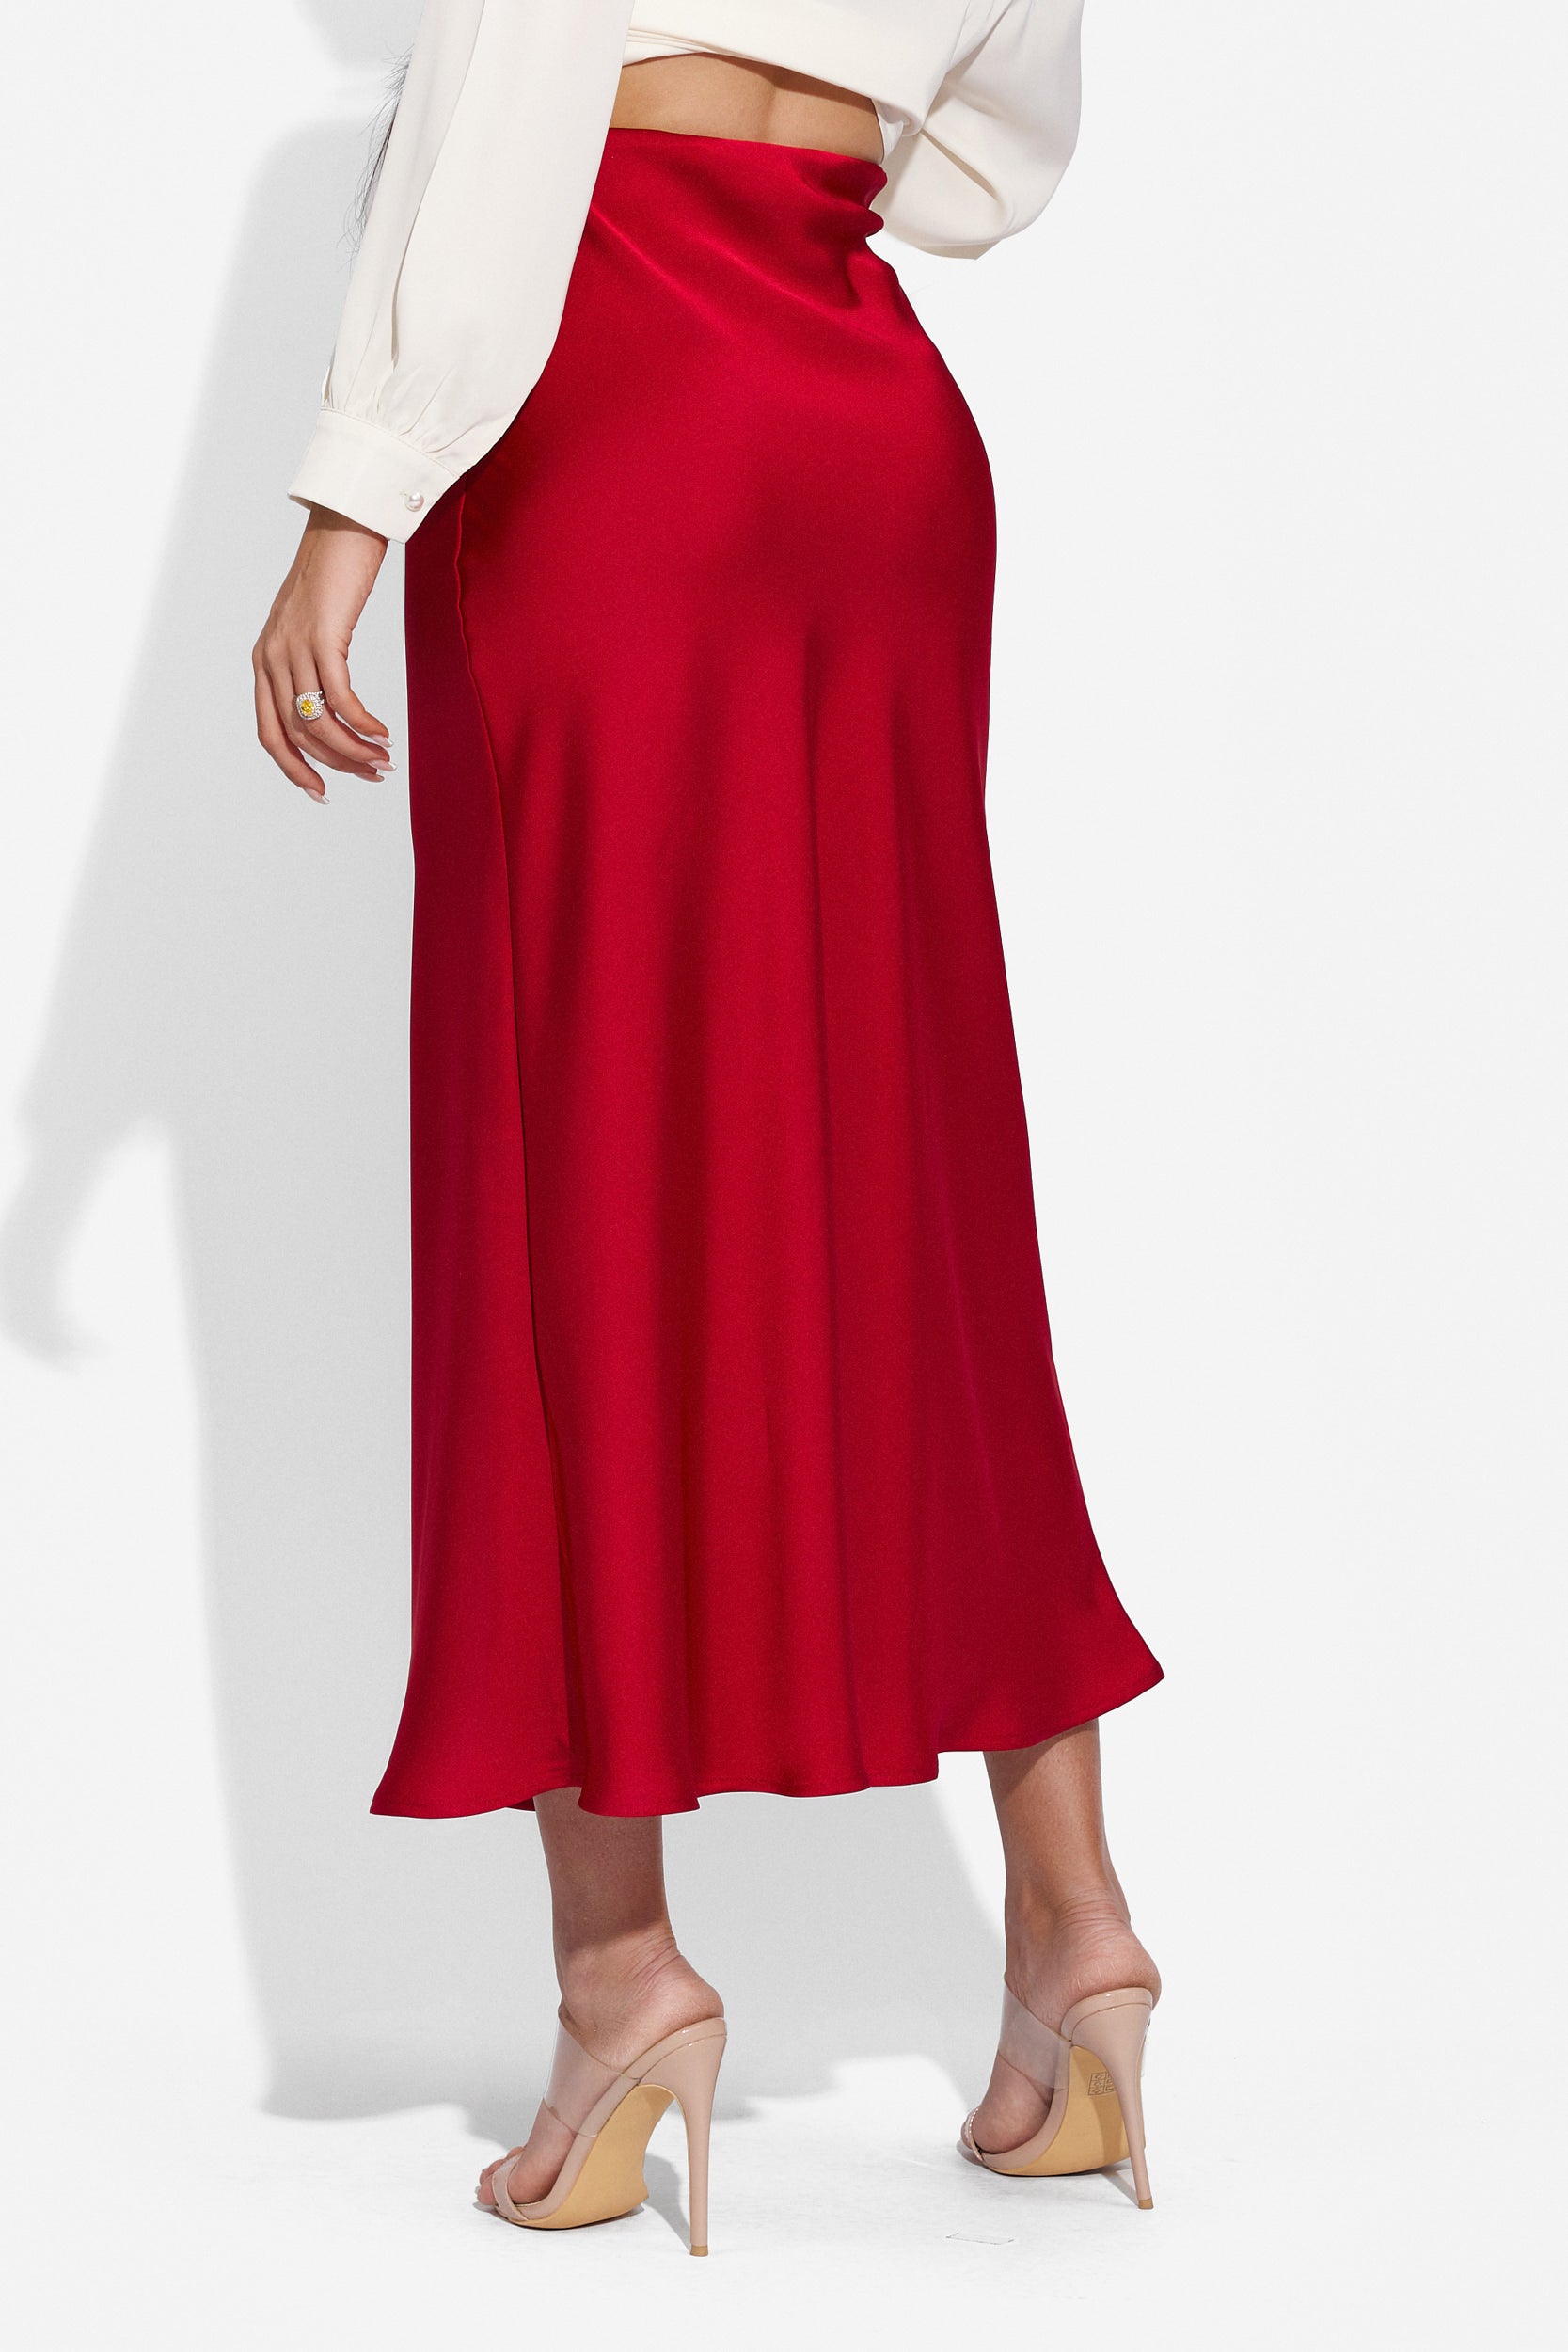 Ladies' long satin skirt in red Pinkita Bogas